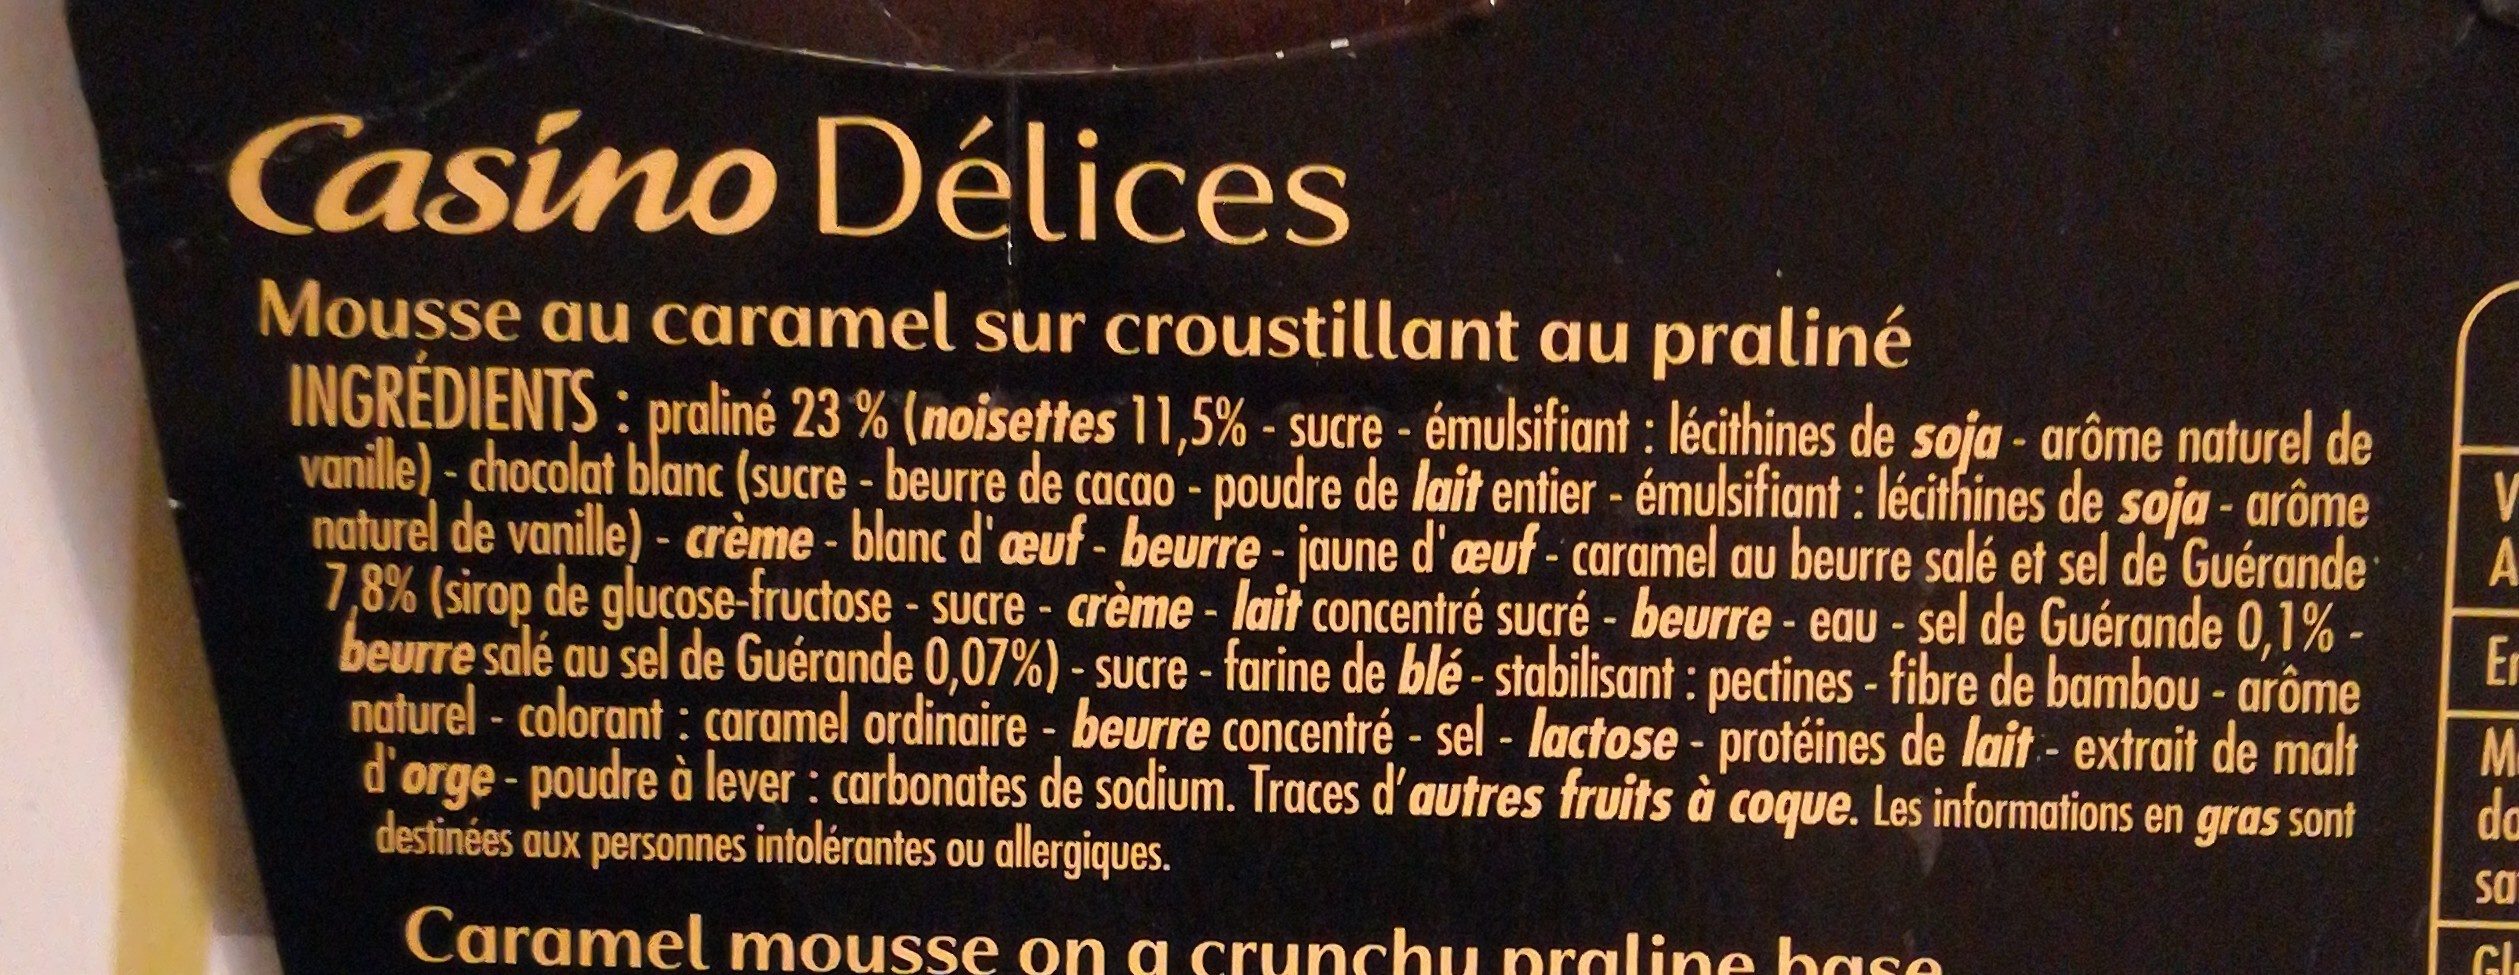 L'extraordinaire mousse au caramel sur lit croustillant au praliné - Ingredienser - fr